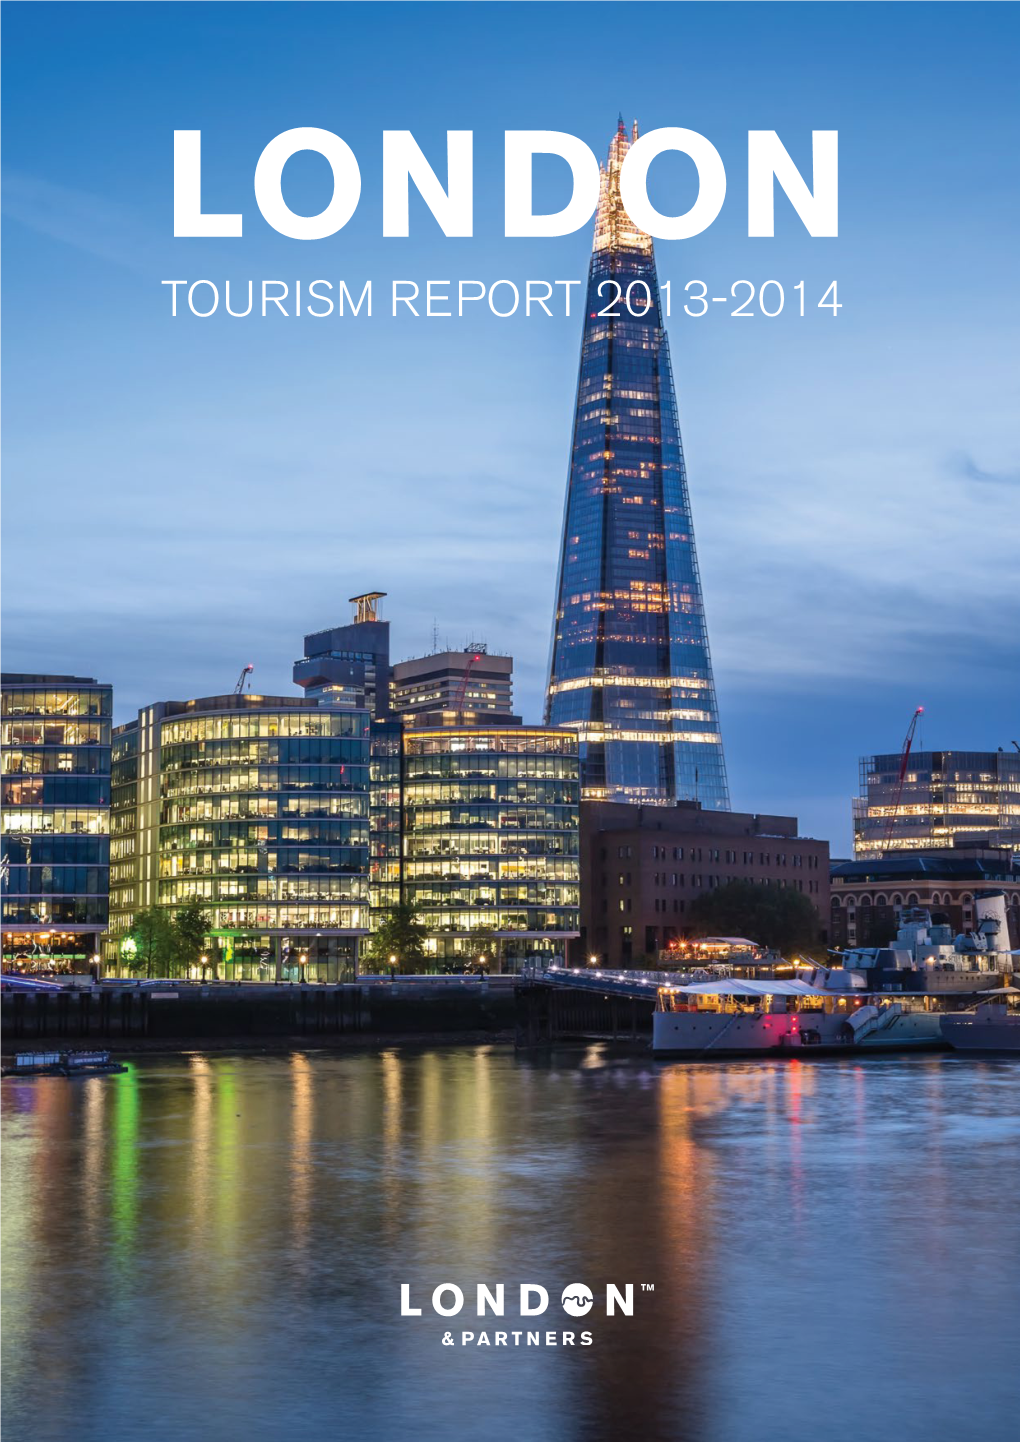 London Tourism Report 2013-2014 Contents